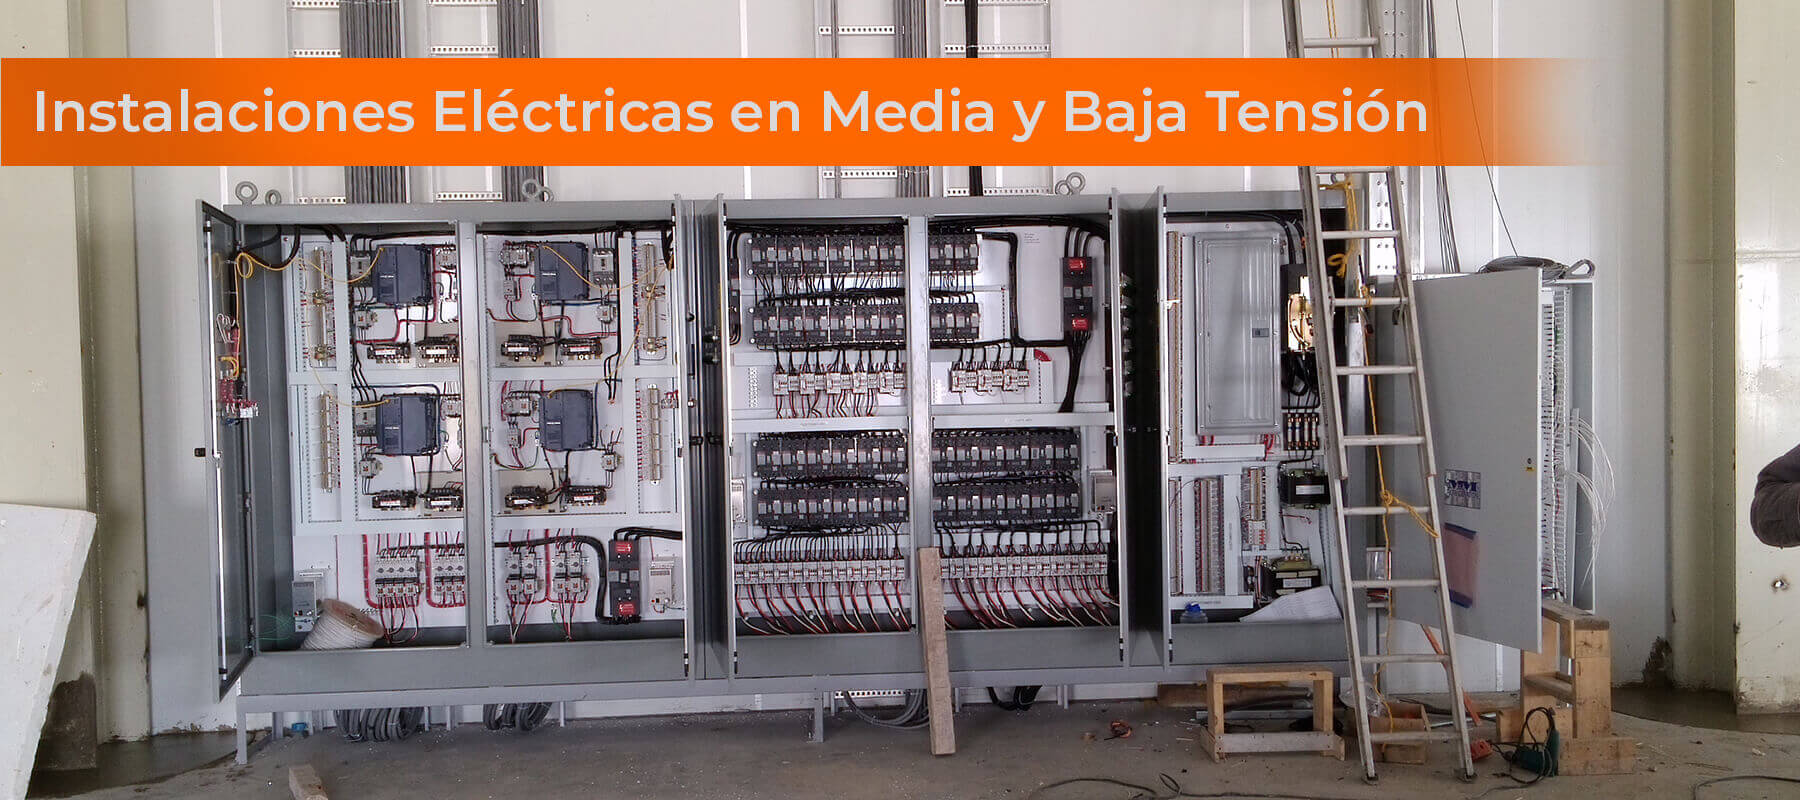 Instalaciones Electricas De Media Y Baja Tension 1